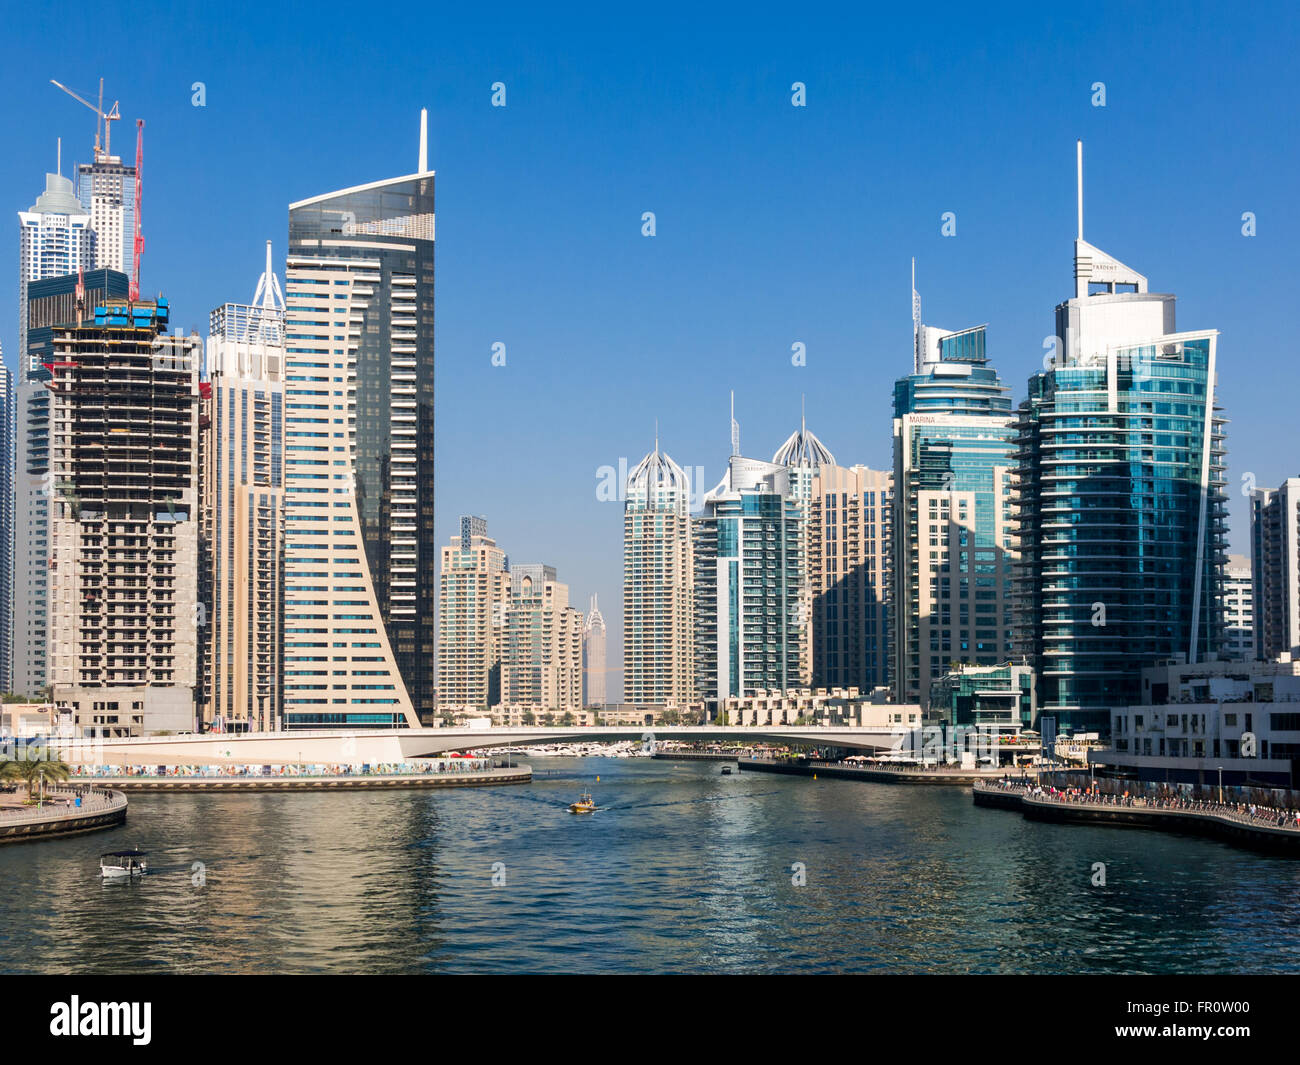 Waterfront gigantescos edificios, barcos y puente en la zona del puerto deportivo de Dubai, Emiratos Árabes Unidos. Foto de stock